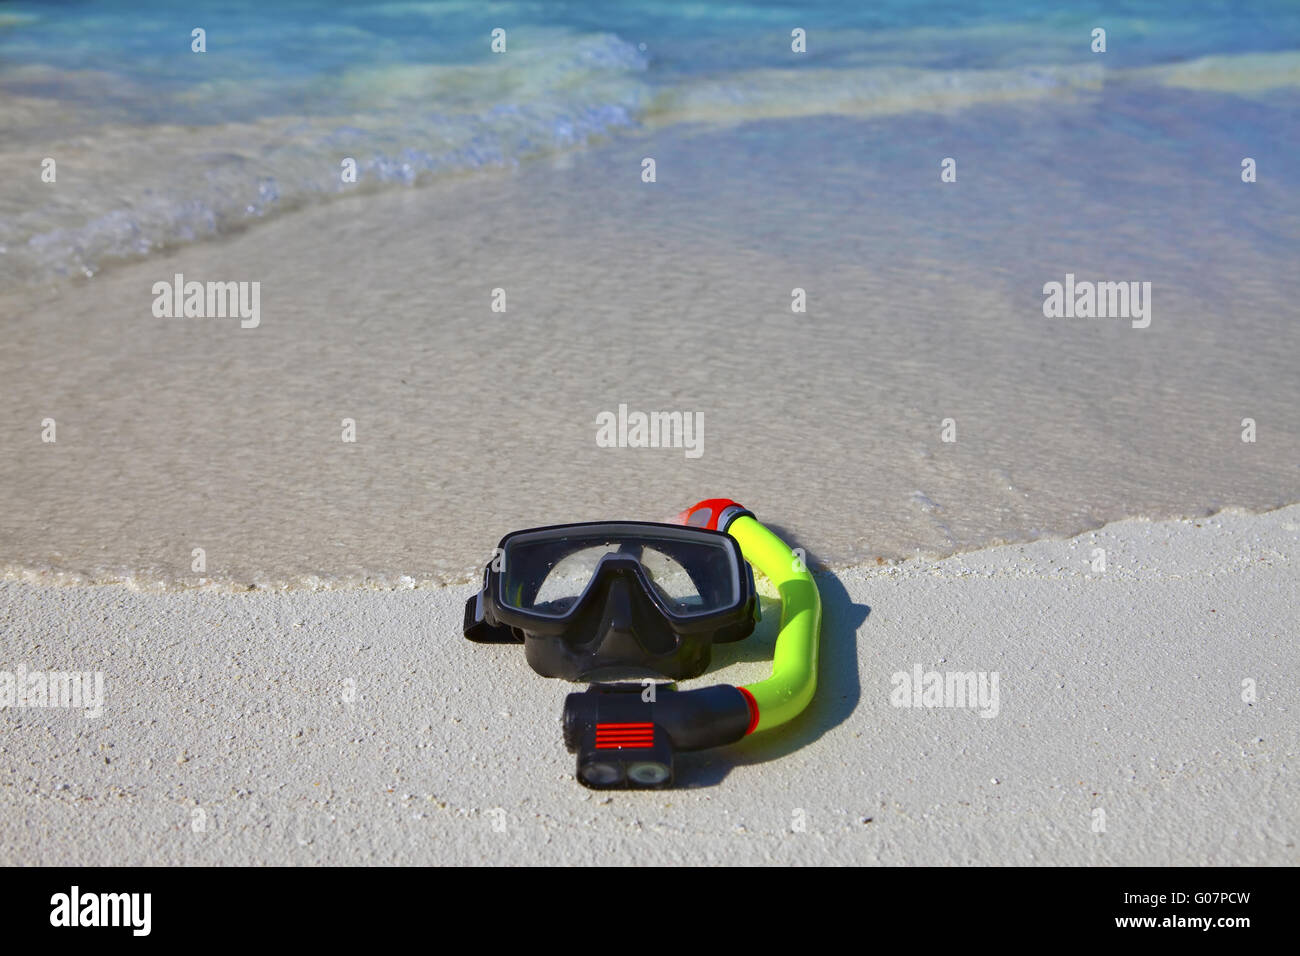 Masque, palmes, un tube à poser sur du sable sur fond de Banque D'Images